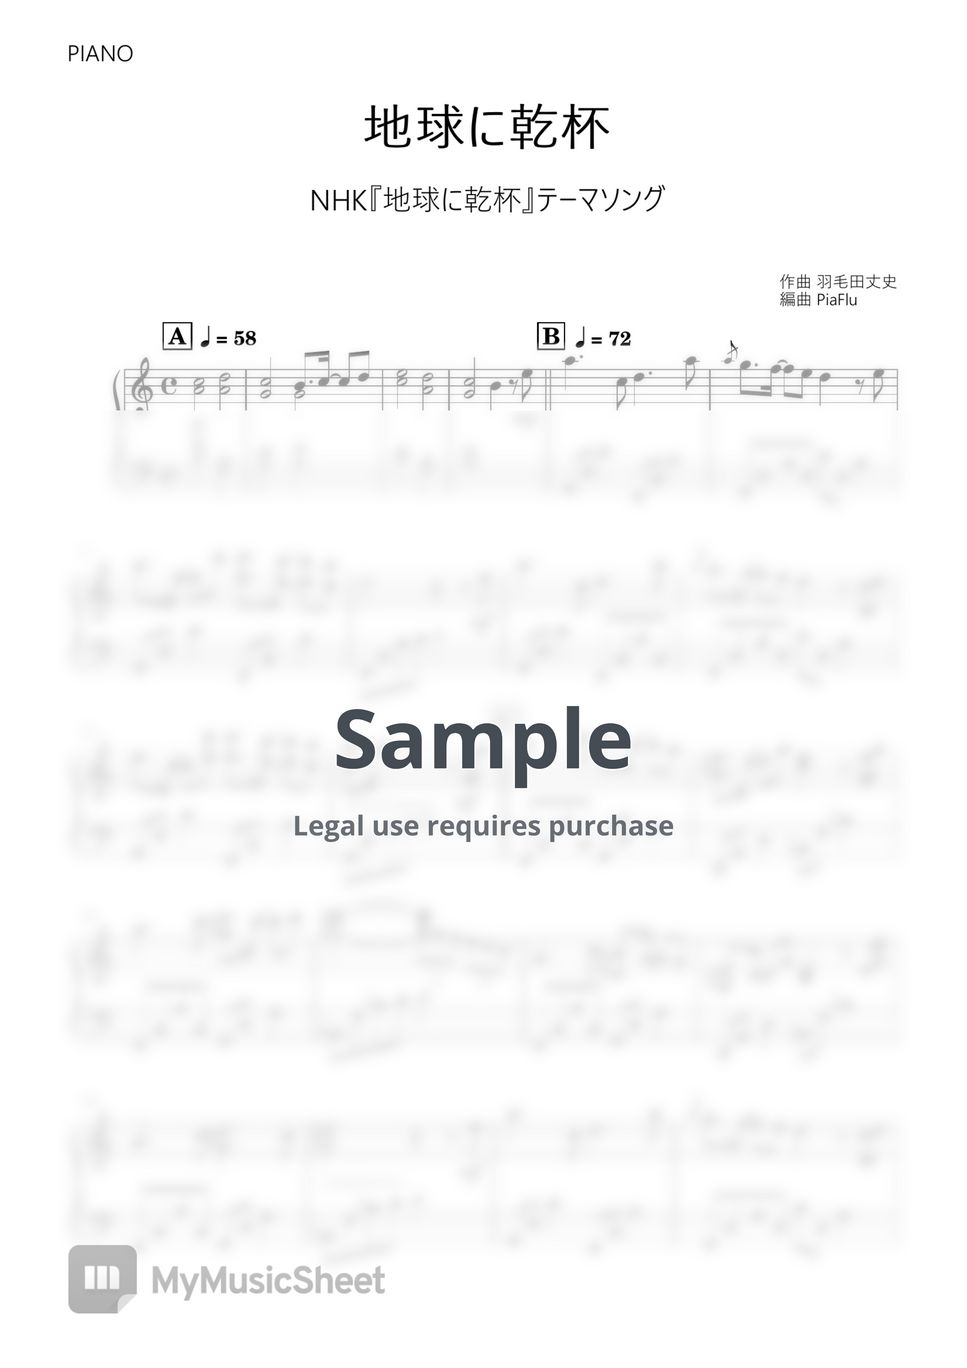 羽毛田丈史 - Takefumi Haketa - Chikyuu ni Kanpai / Takefumi Haketa (Piano) by PiaFlu / ピアフル Piano&Flute